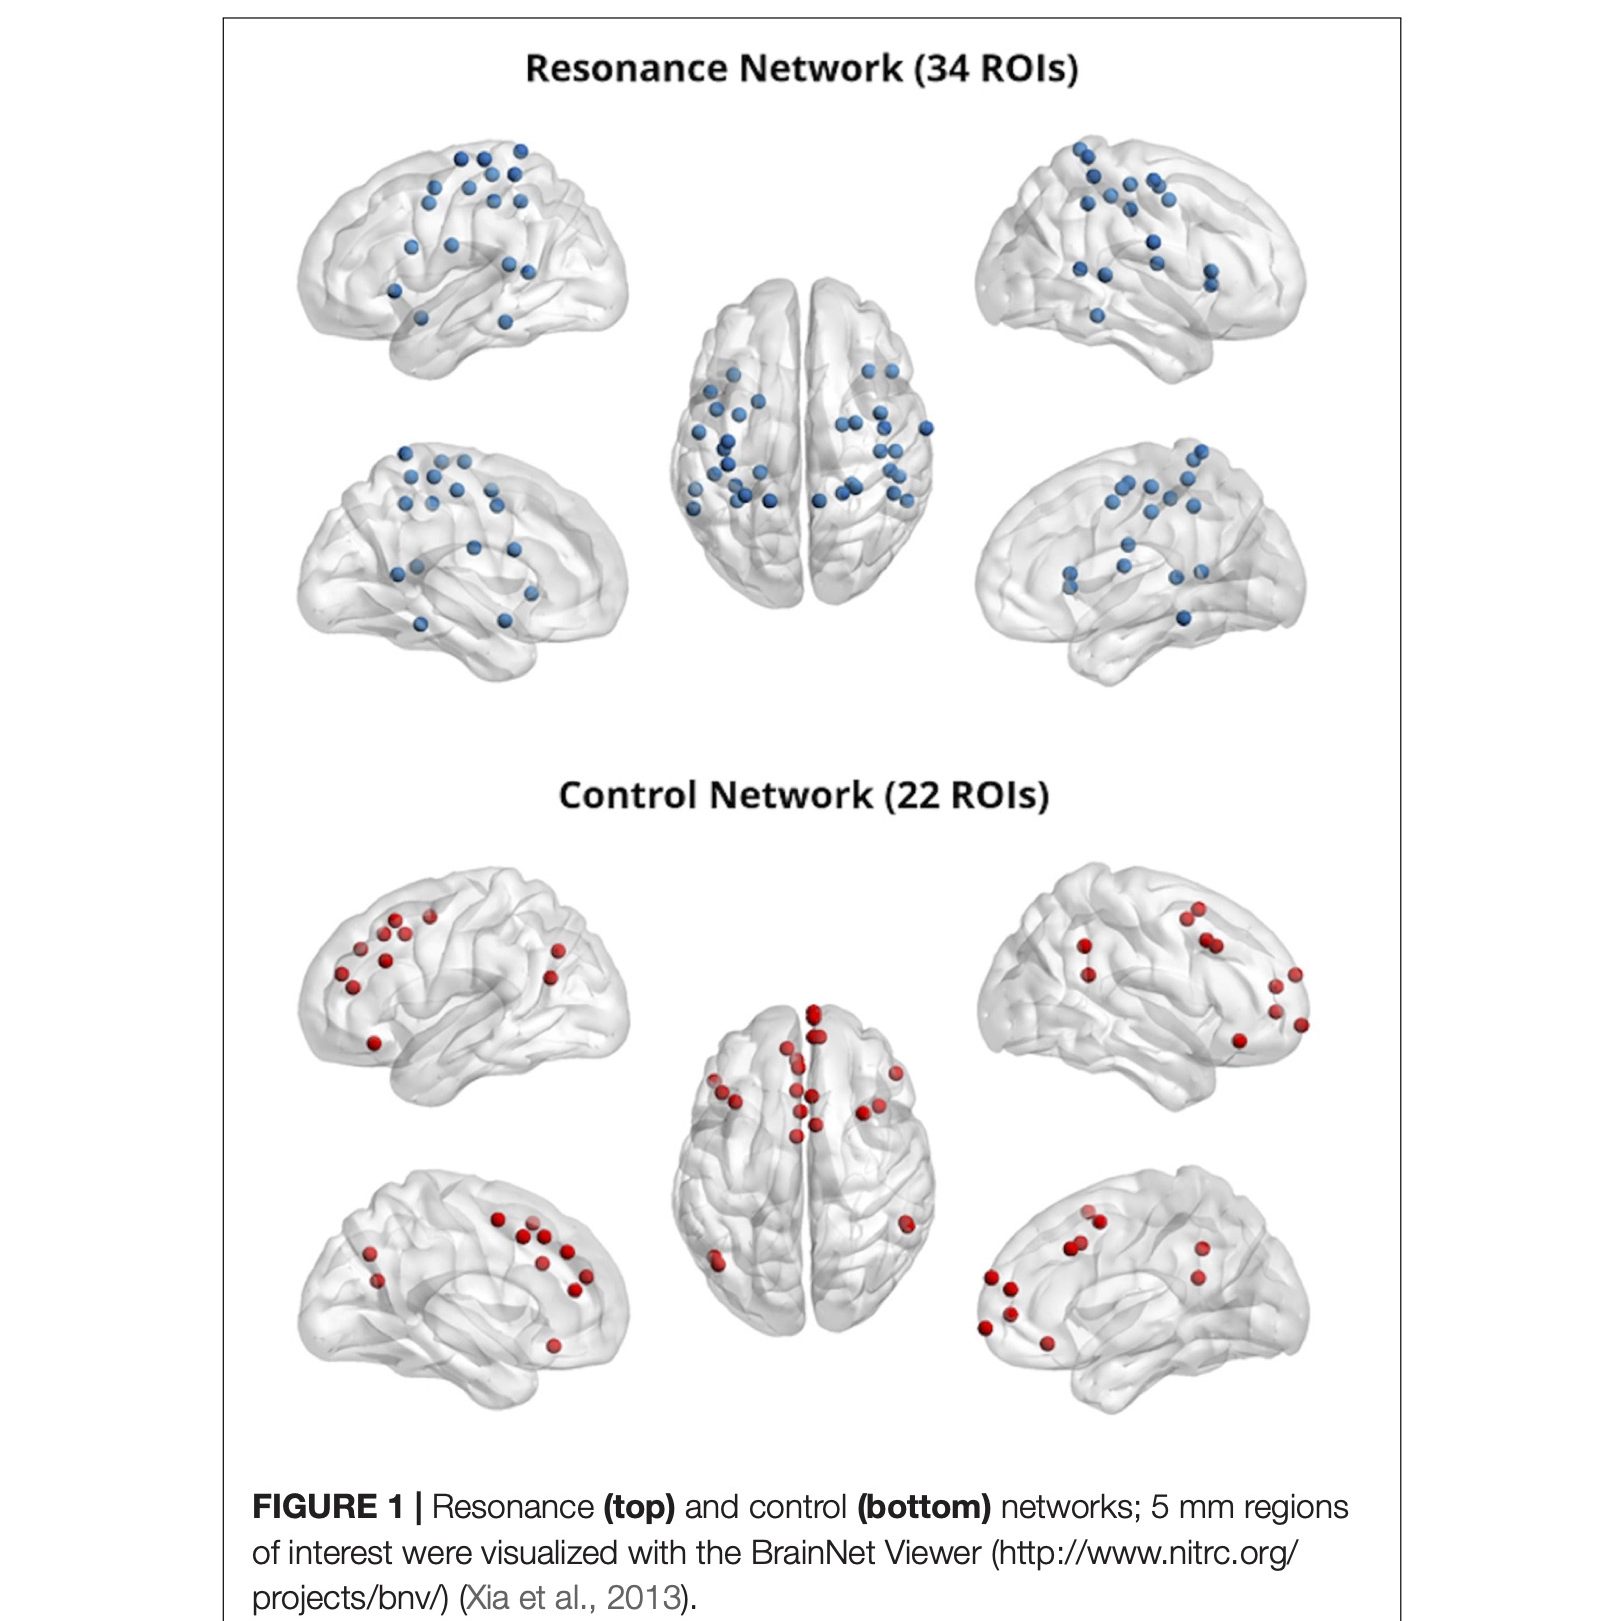 Network cerebrali della risonanza emotiva e della regolazione emotiva